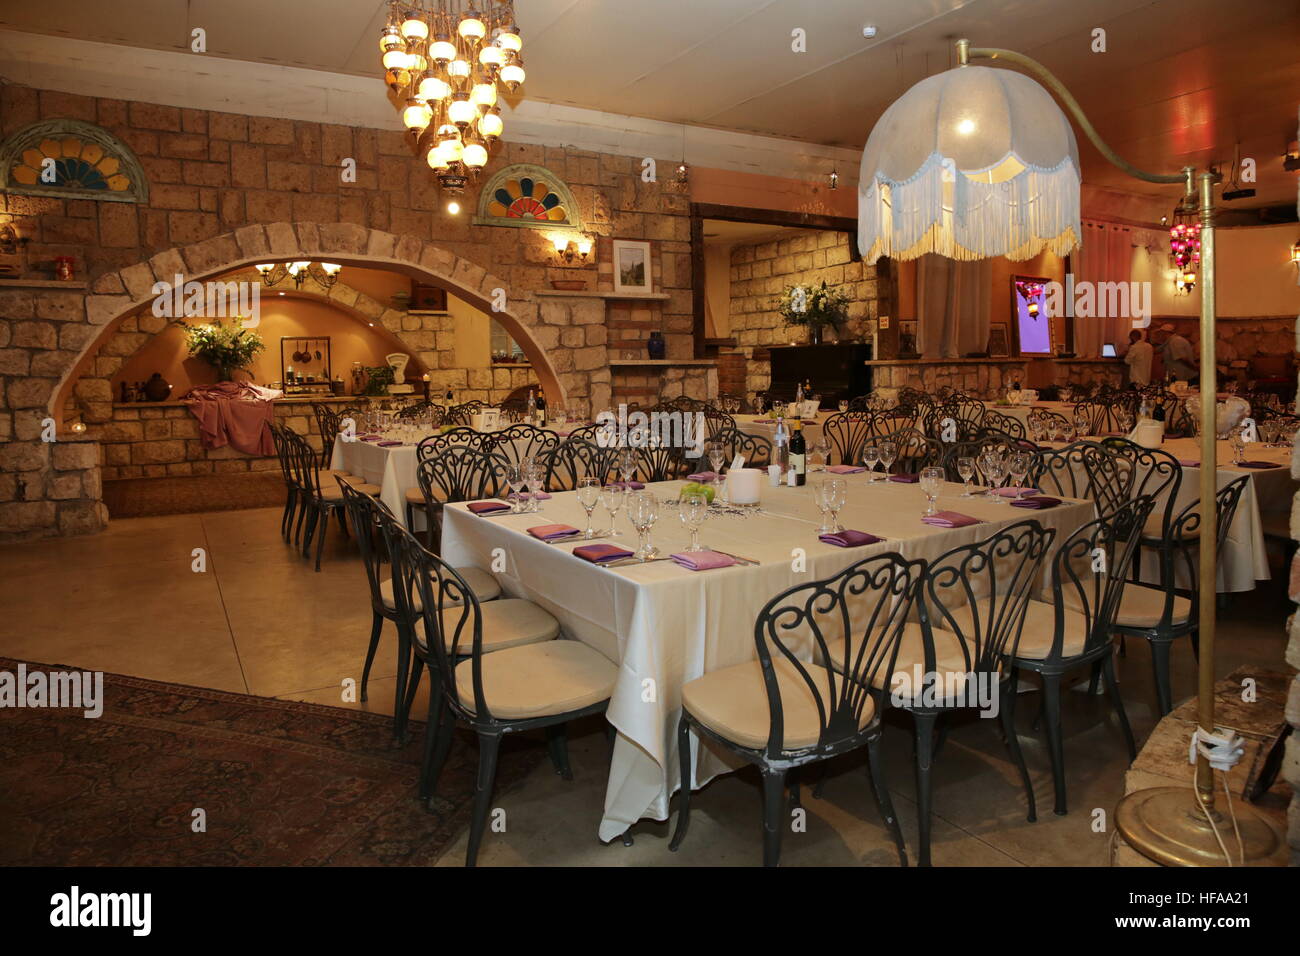 Restaurante iluminado atmosférica interior Foto de stock